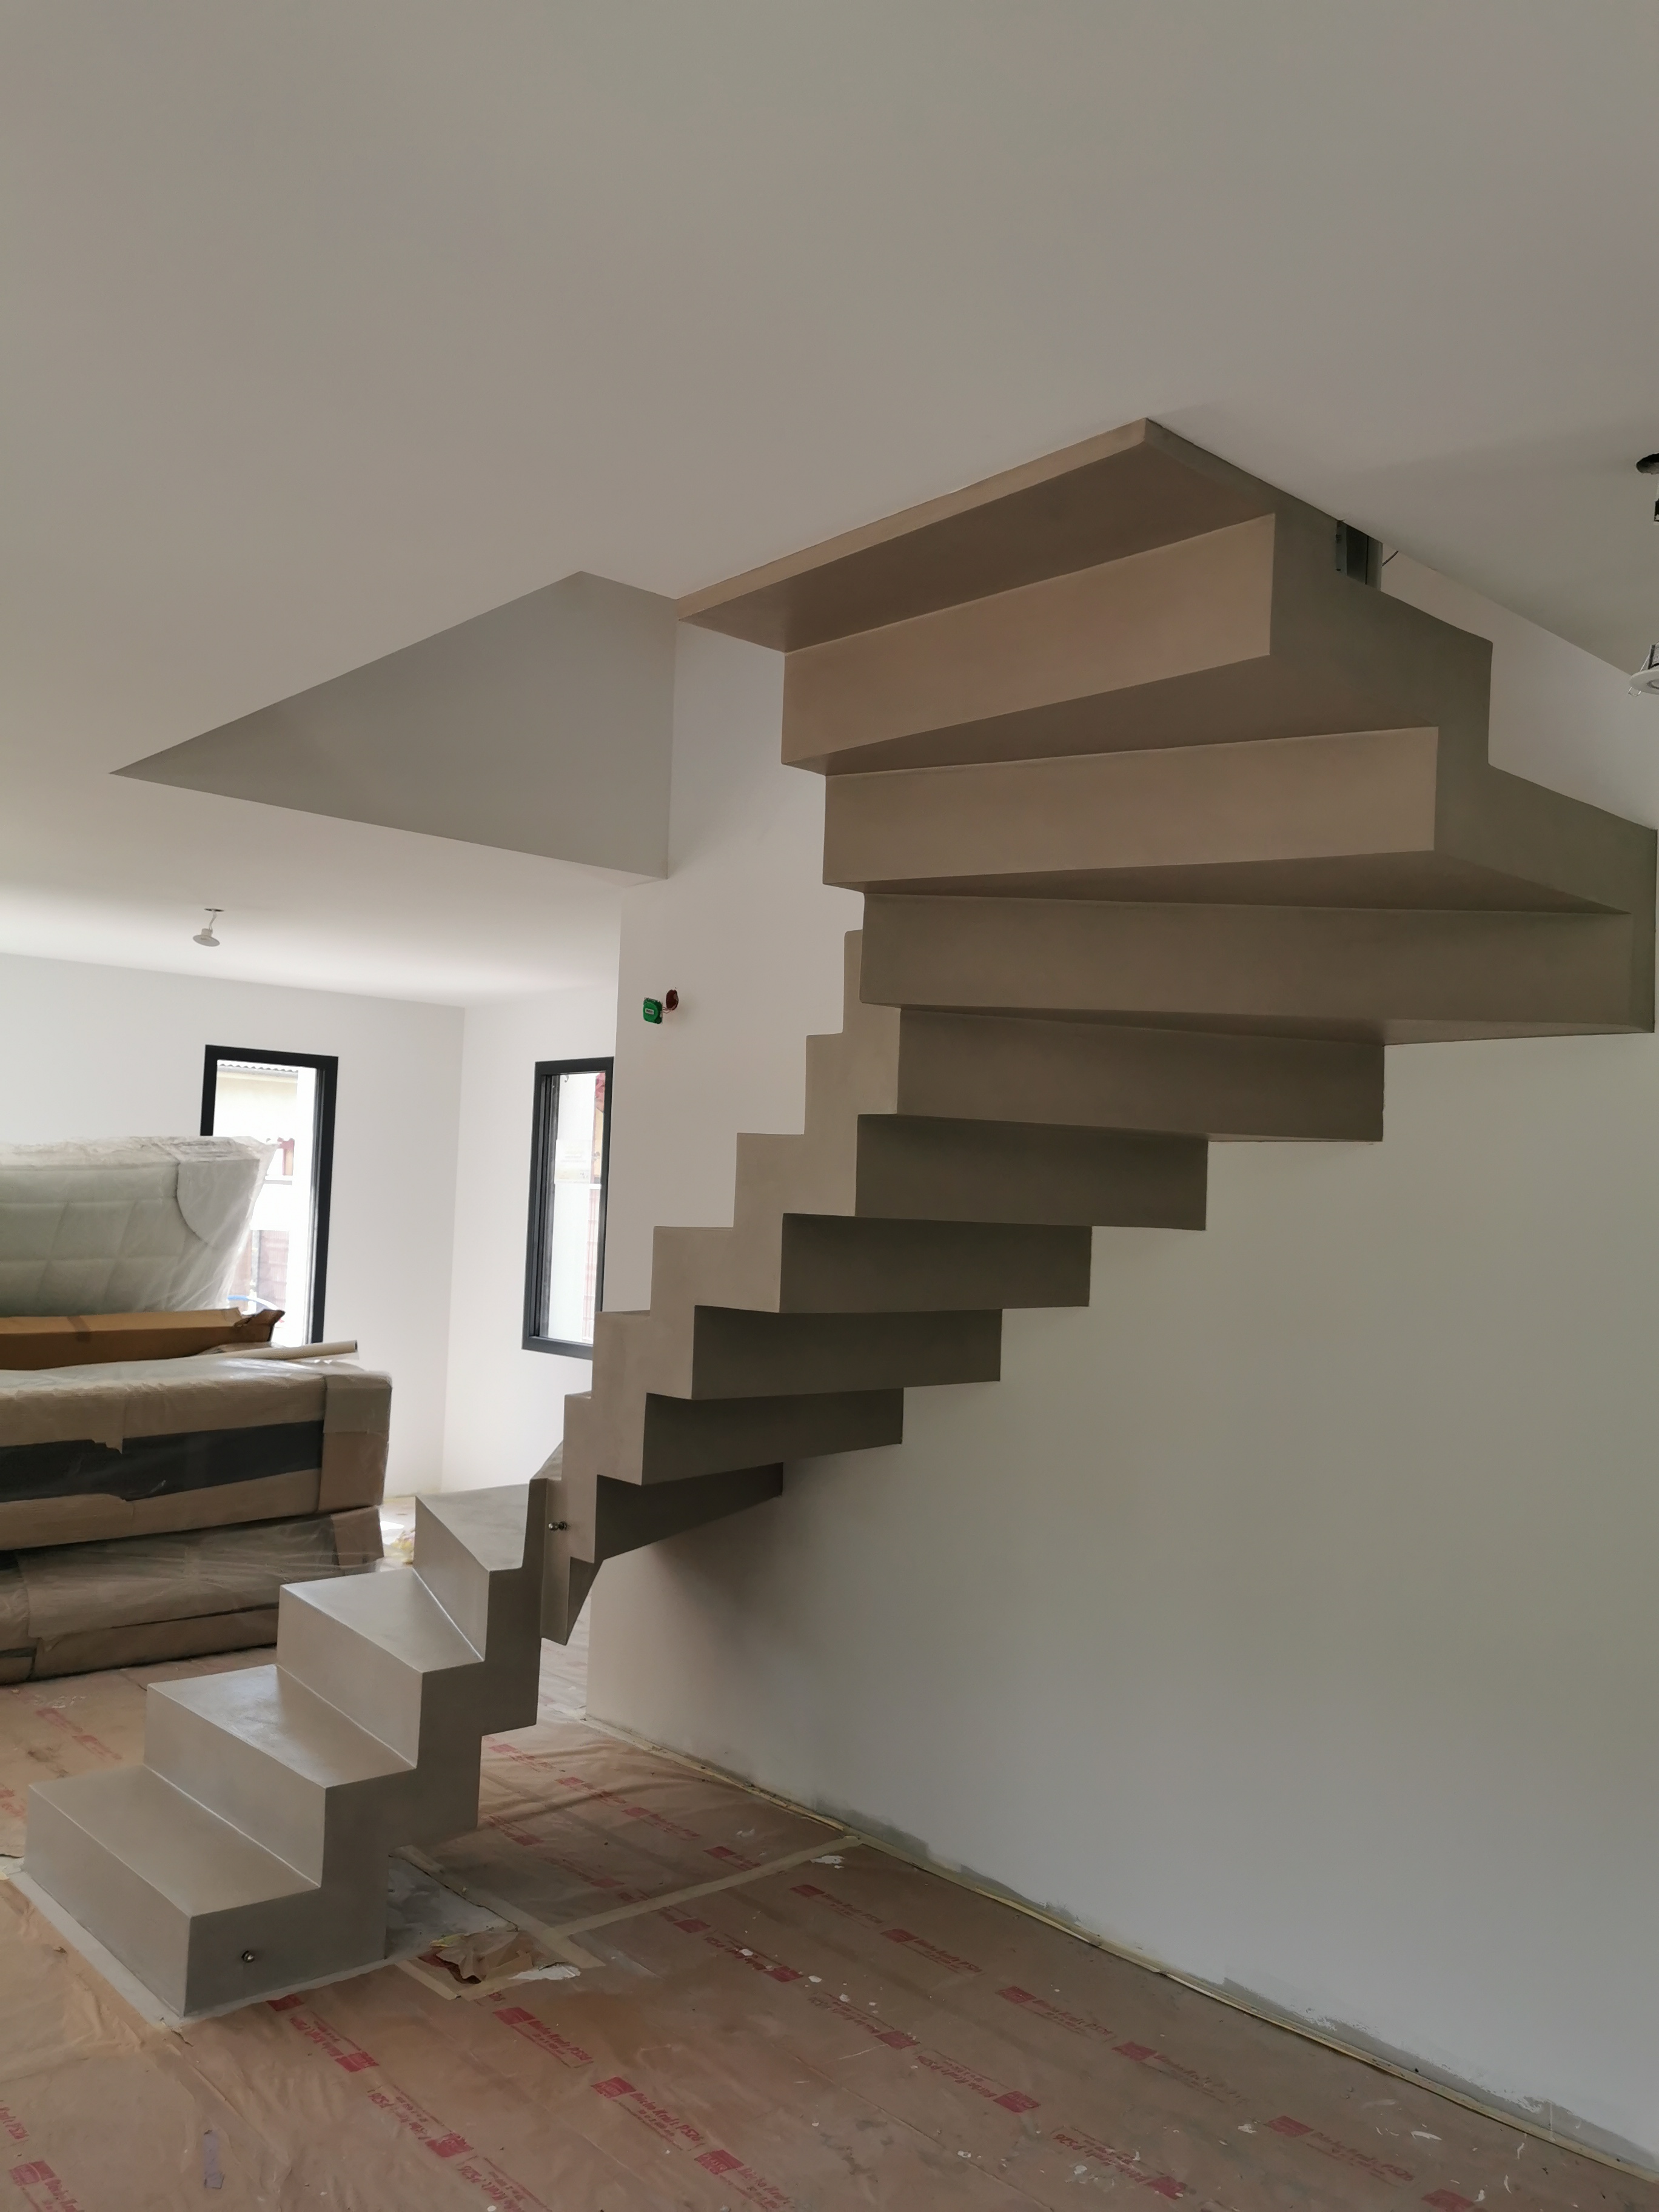 remarquable escalier crémaillère contemporain en béton ciré vernis mat couleur galet original La Teste-de-Buch Arcachon pour un particulier